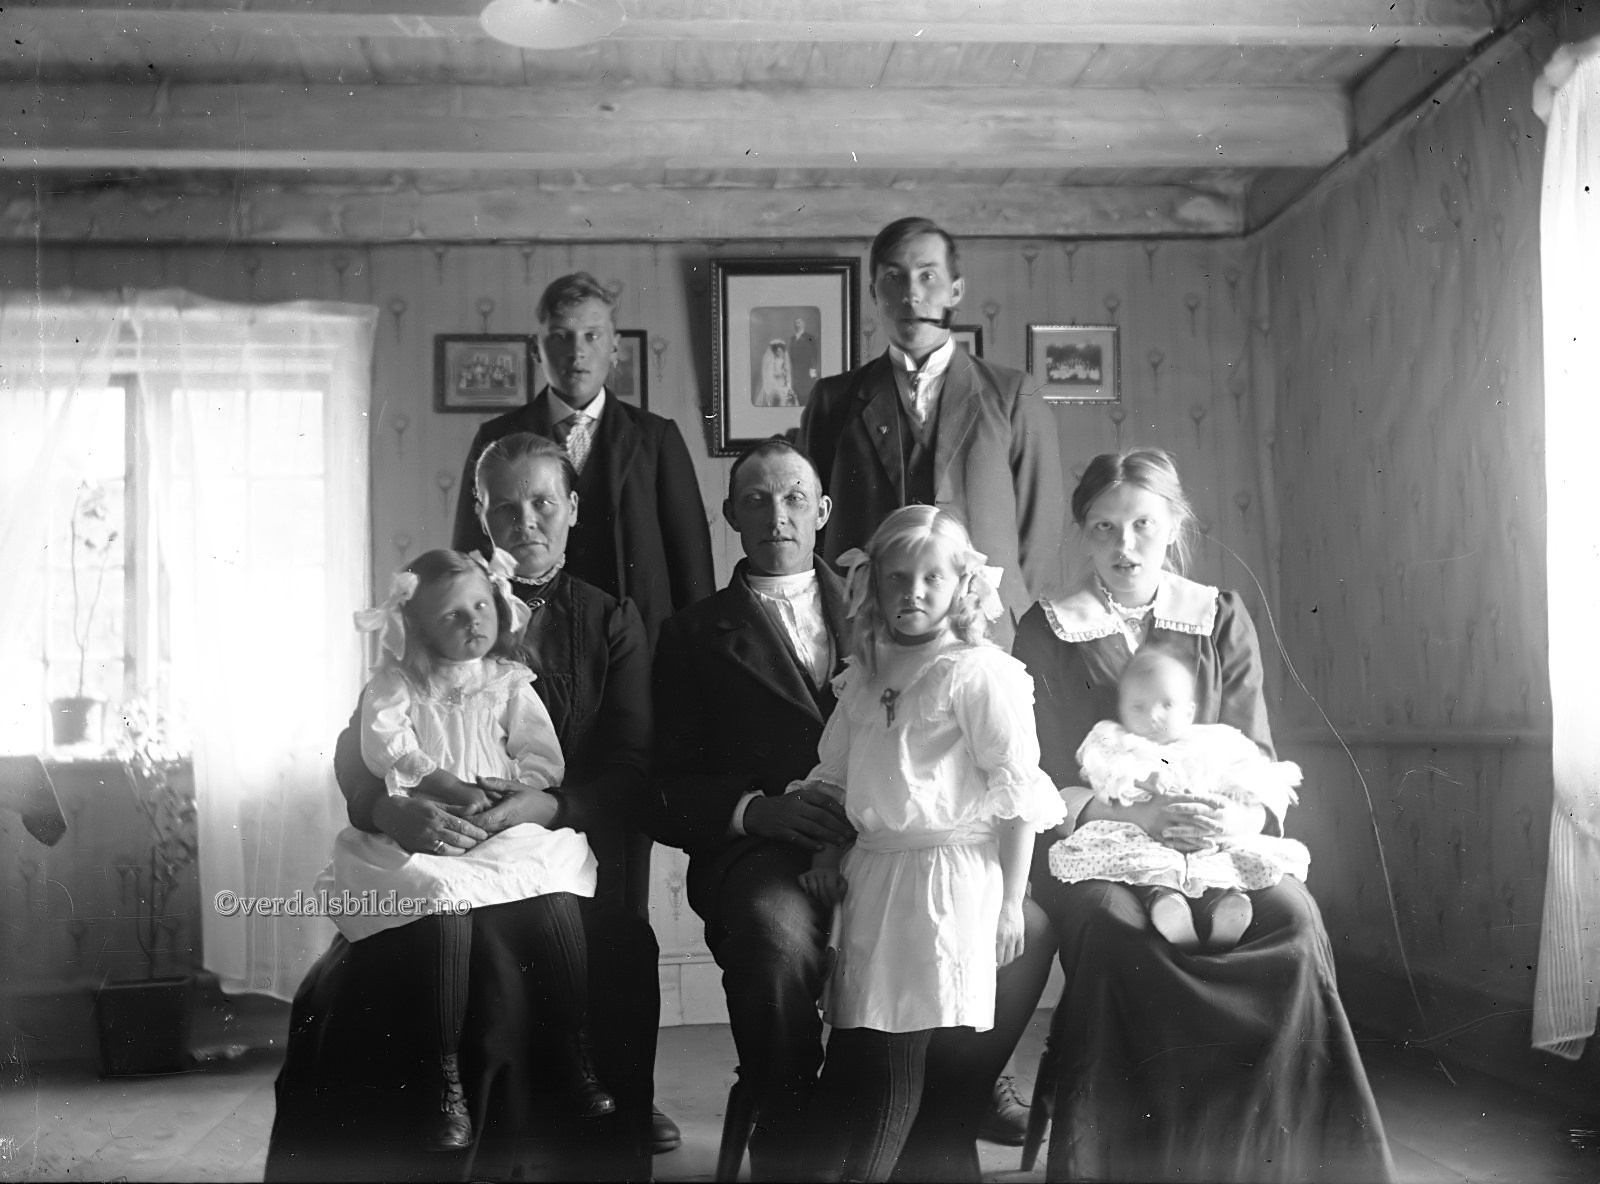 Hjelp med navna, Ola Molden og Johannes Overmo. Familien bodde på Kulsli nedre vest for Elneshøgda. Foto av Nikolai Malmo. Utlånt av SNK.